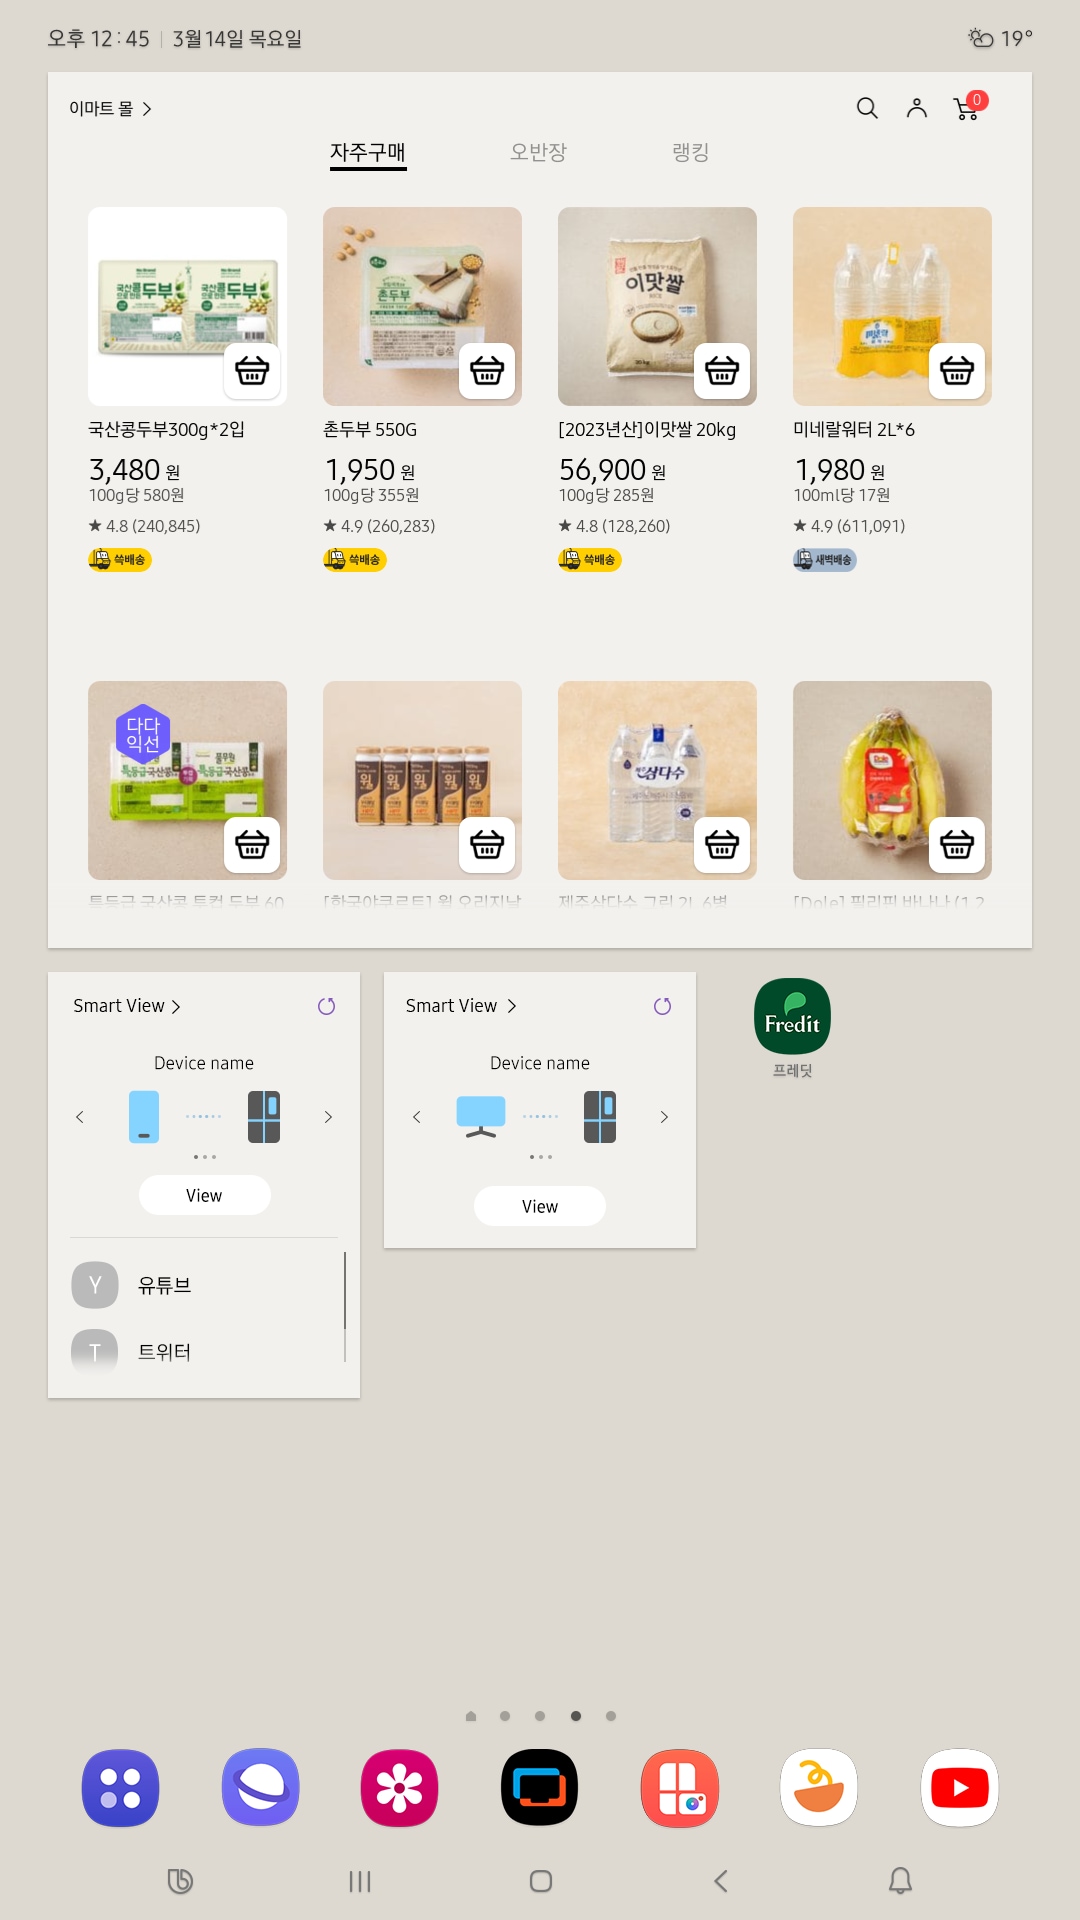 AI 패밀리허브 화면에 이마트몰 앱에서 쇼핑 가능한 식재료 목록이 이미지, 가격과 함께 보여집니다.